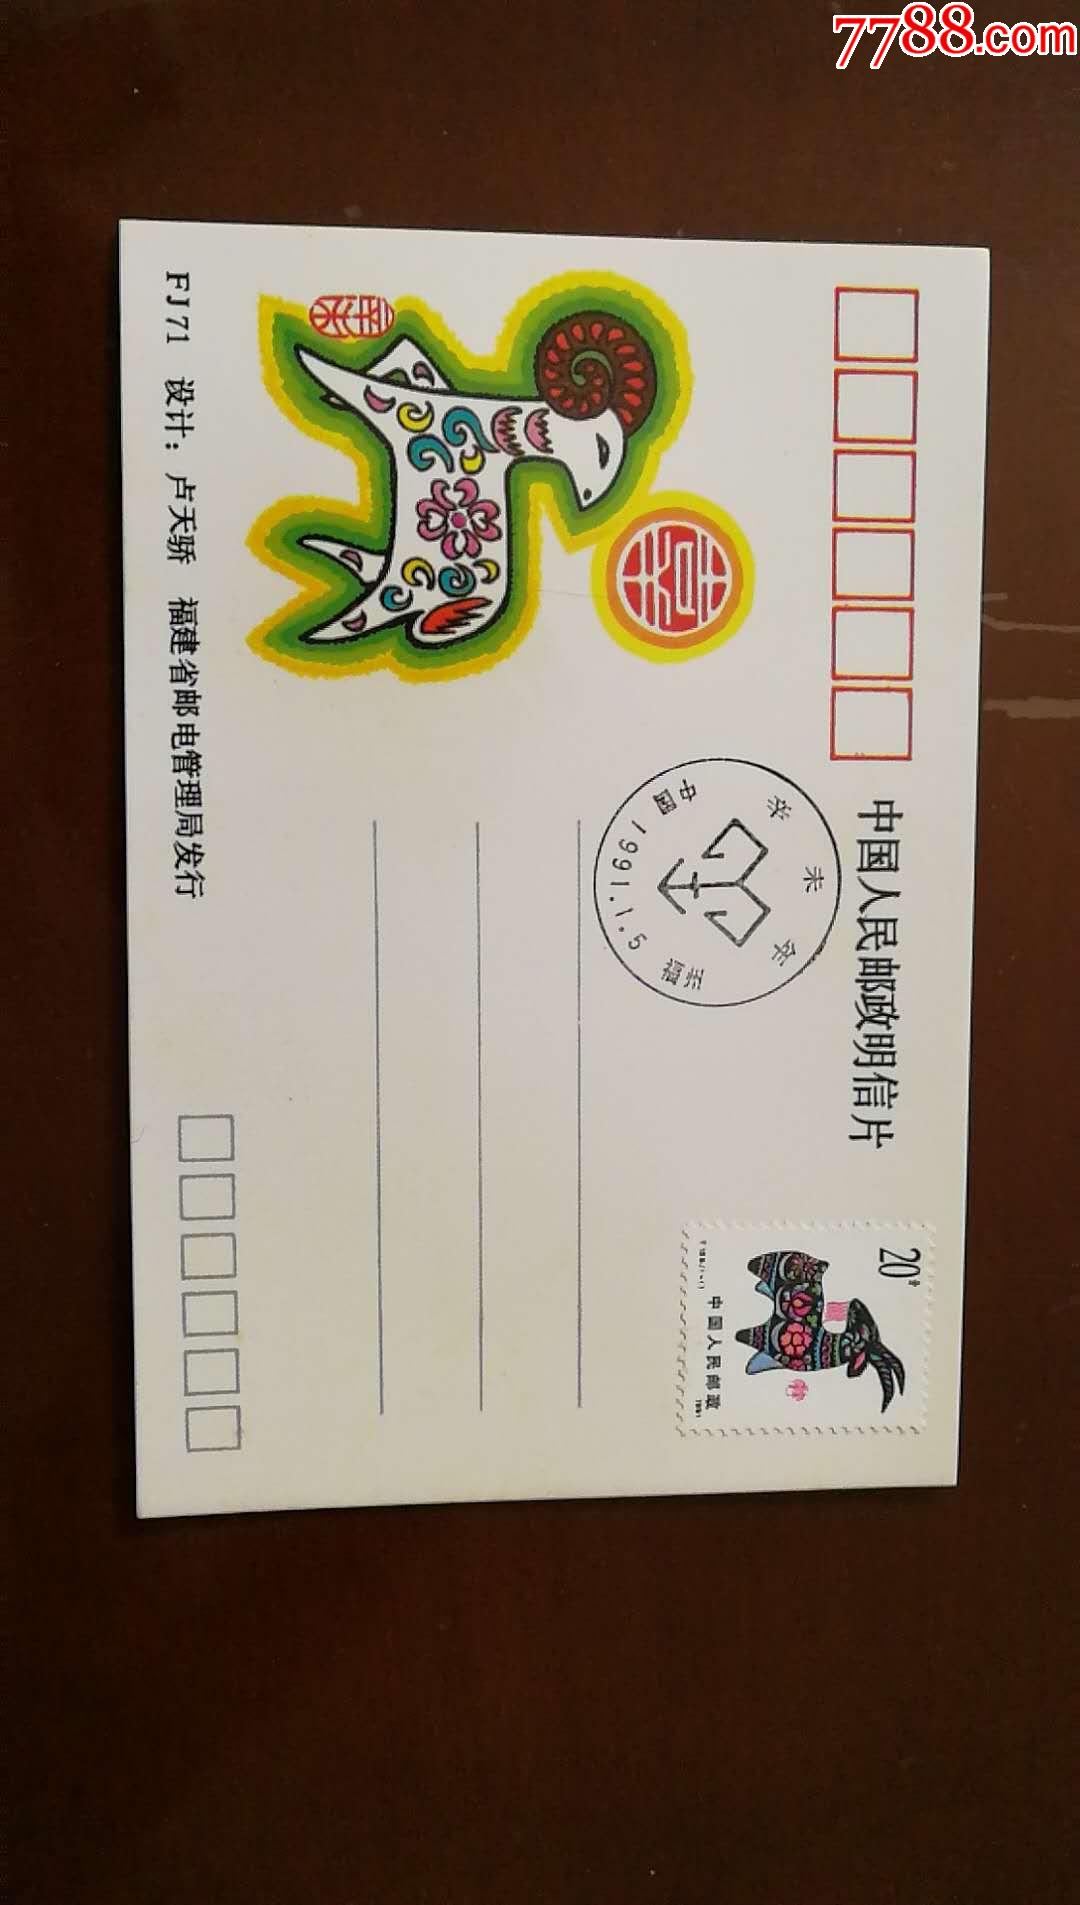 羊生肖票发行首日纪念明信片卢天娇设计